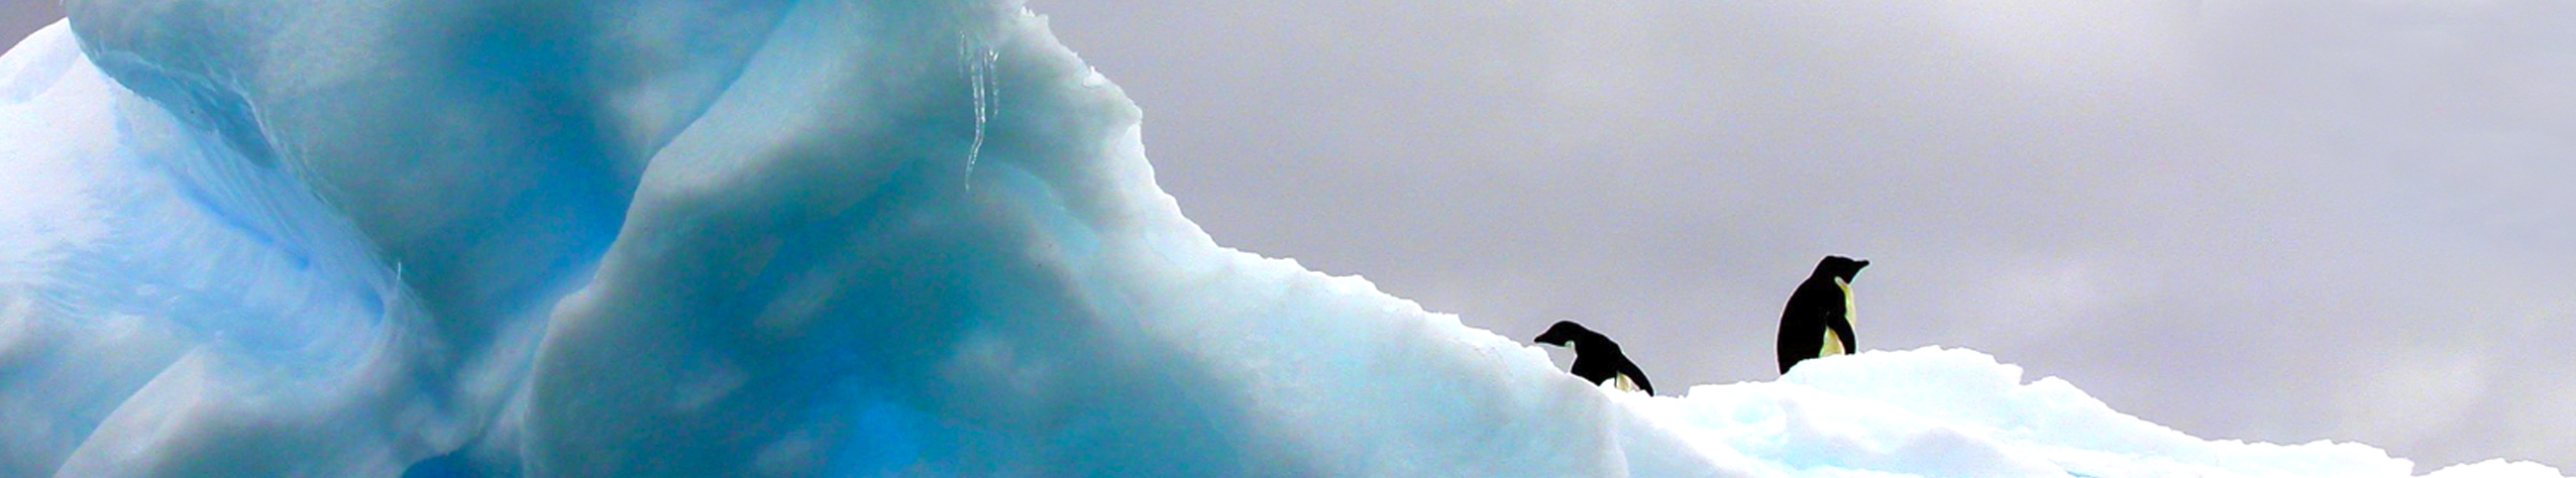 Antarktis Kaelte - Kälte- und Wärmetechnik